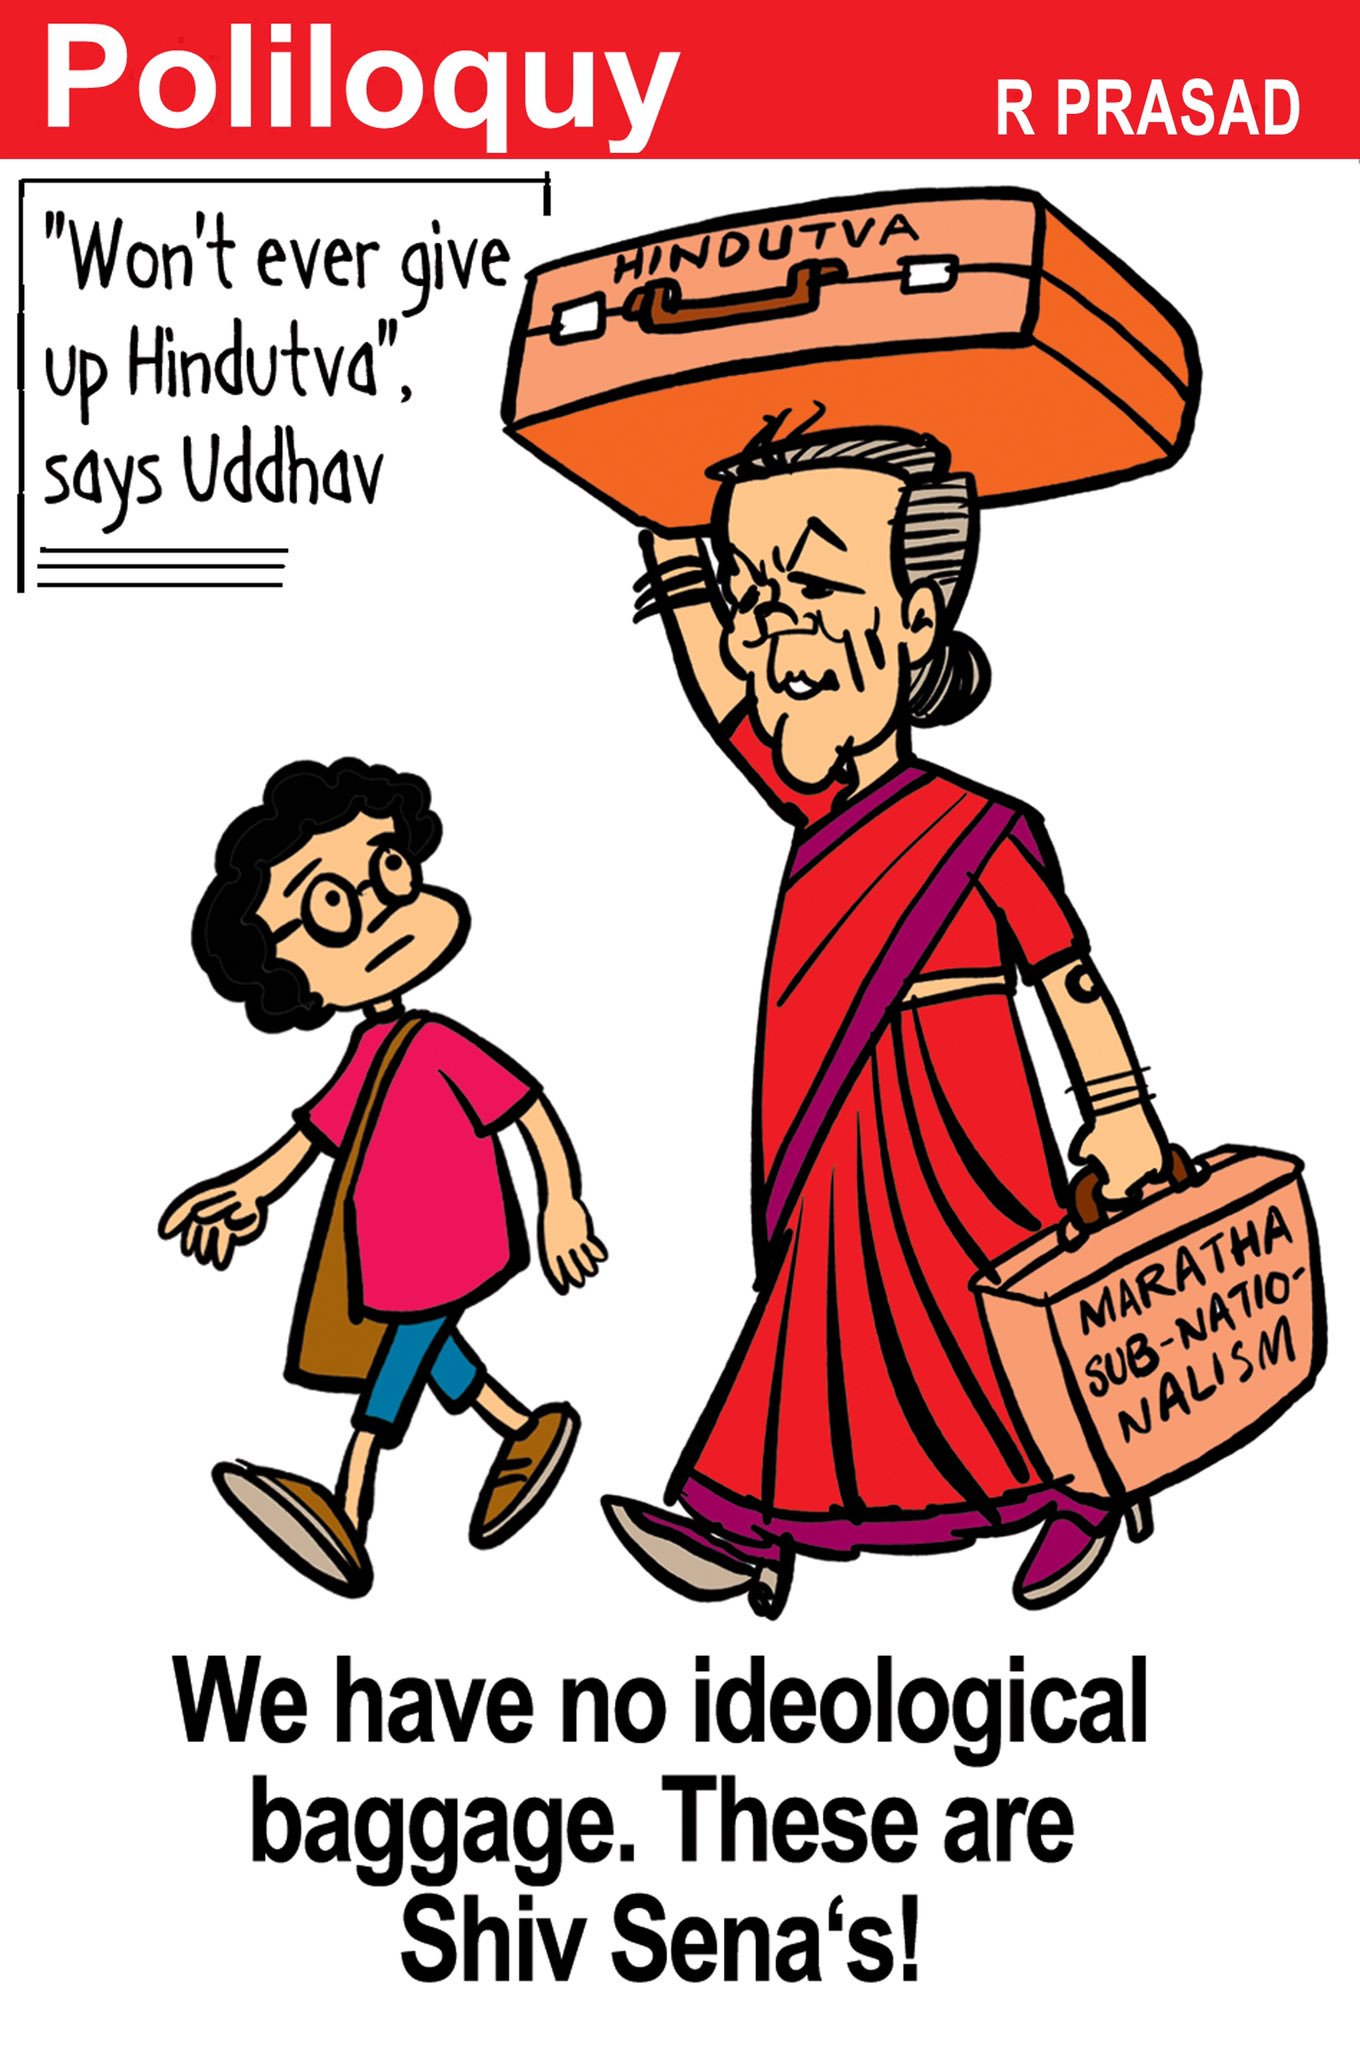 R Prasad depicts Maharashtra CM Uddhav Thackeray's commitment to Hindutva ideals